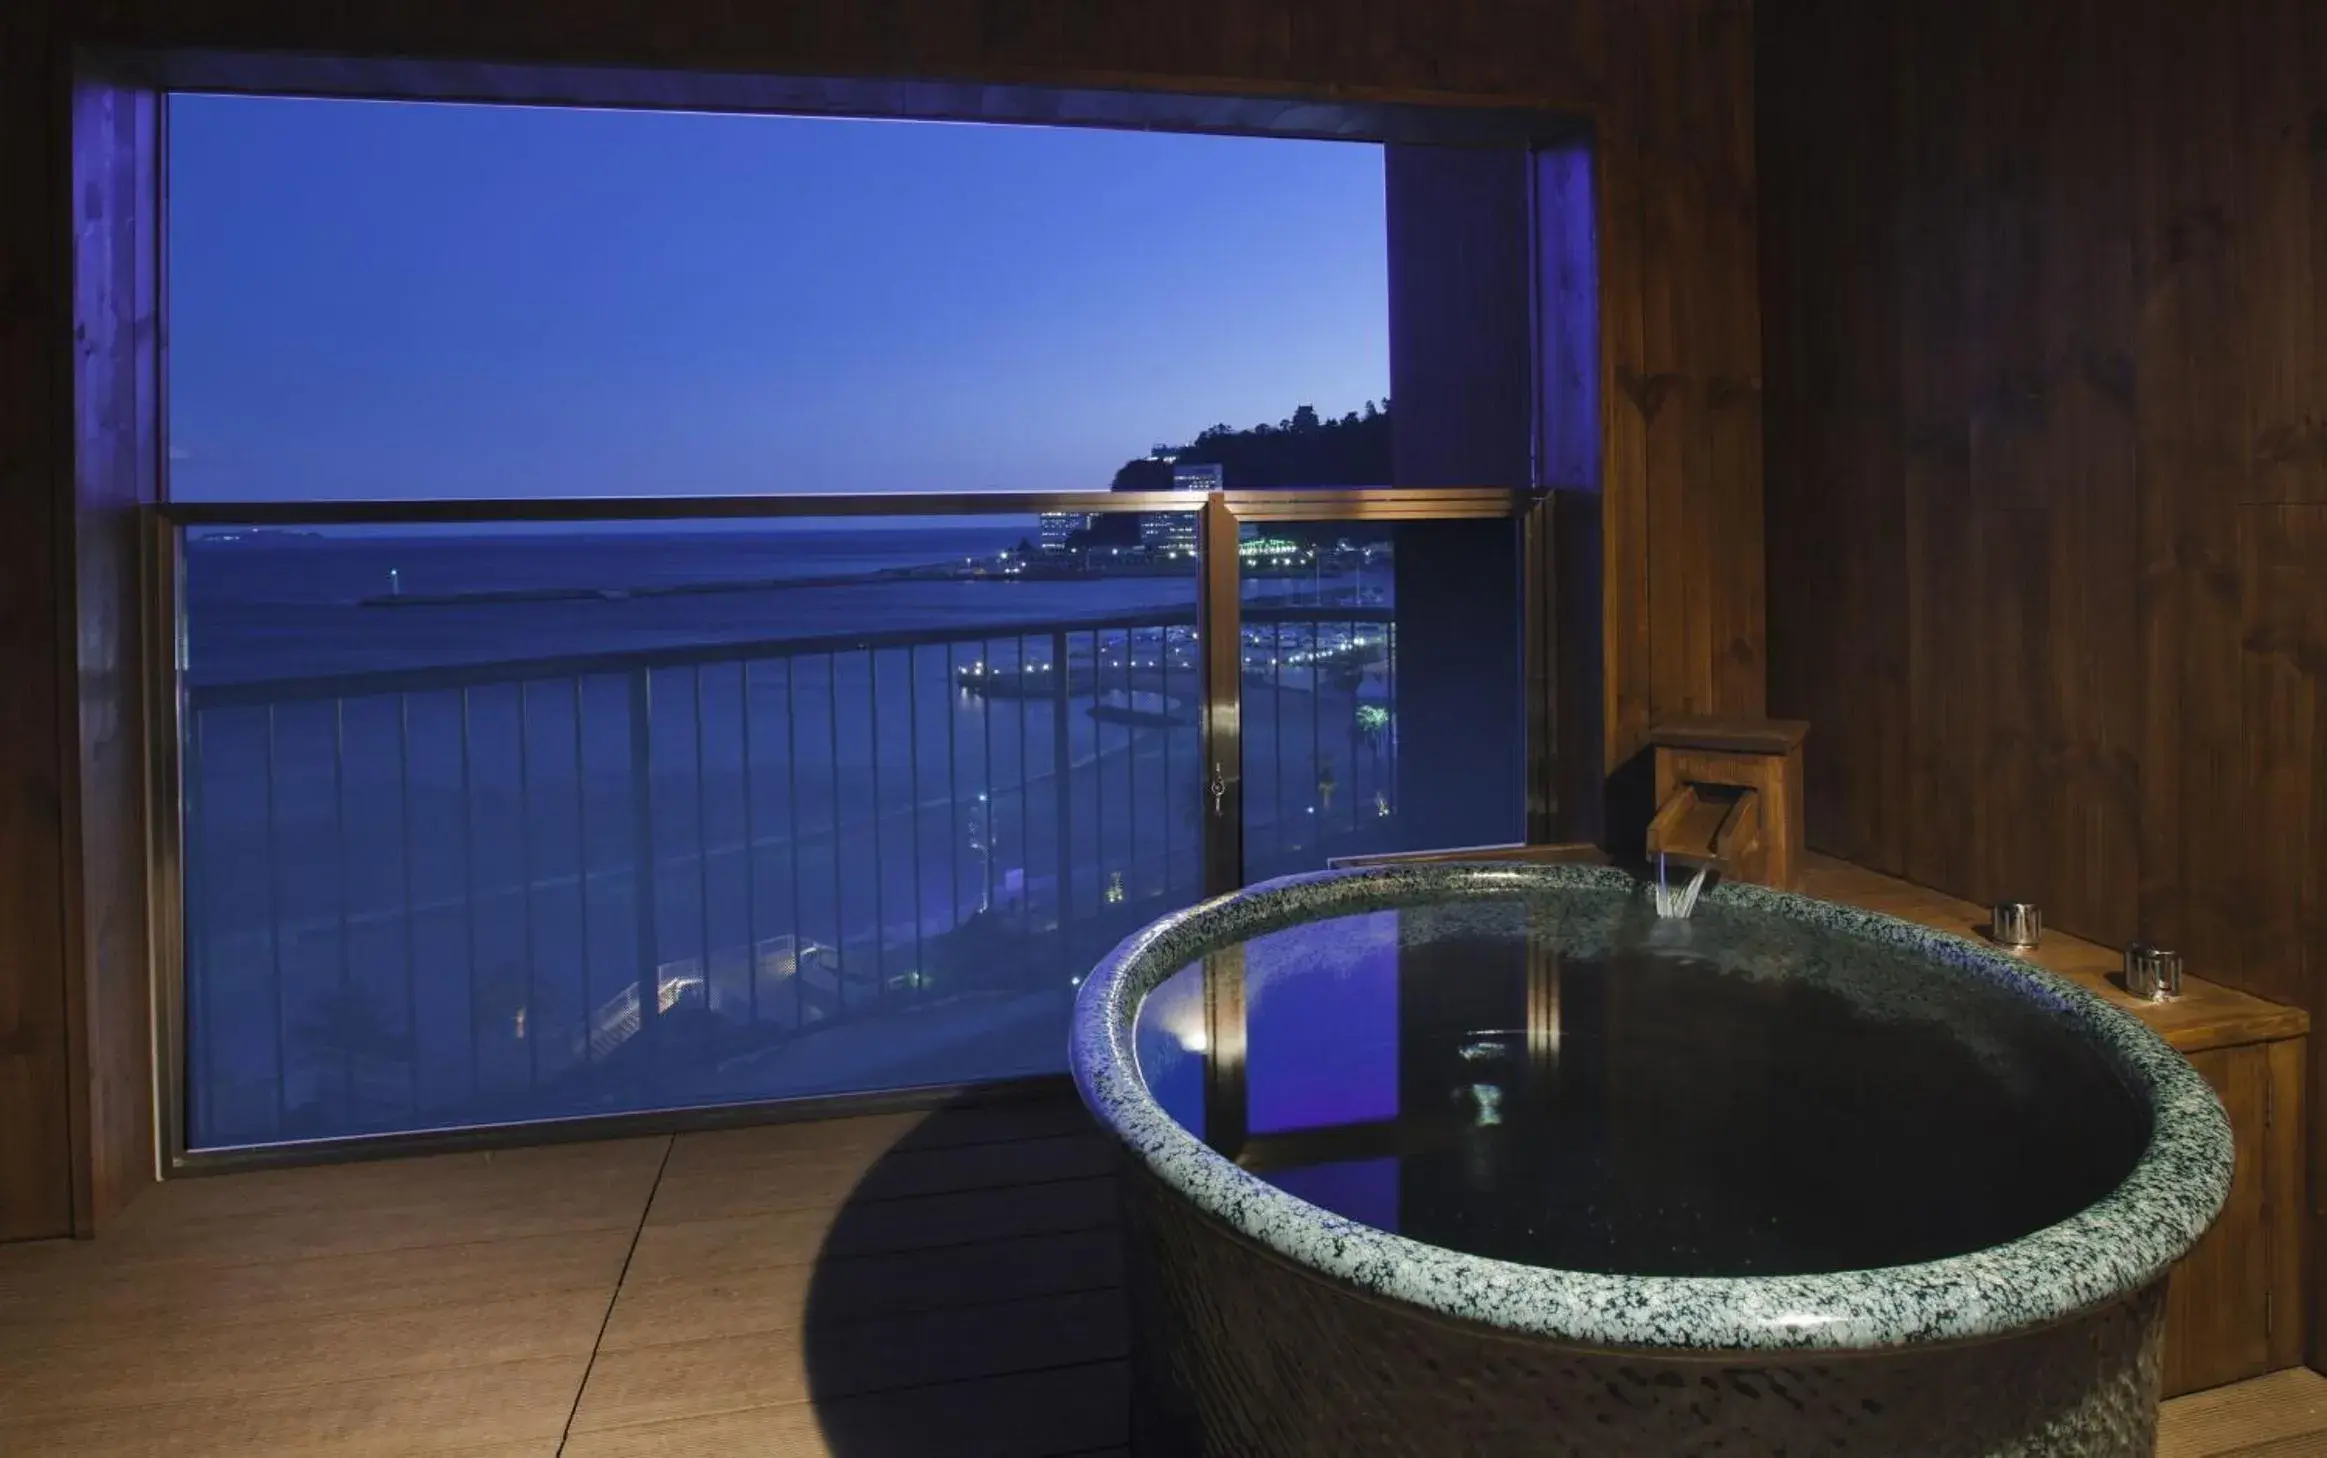 Night in Atami Seaside Spa & Resort